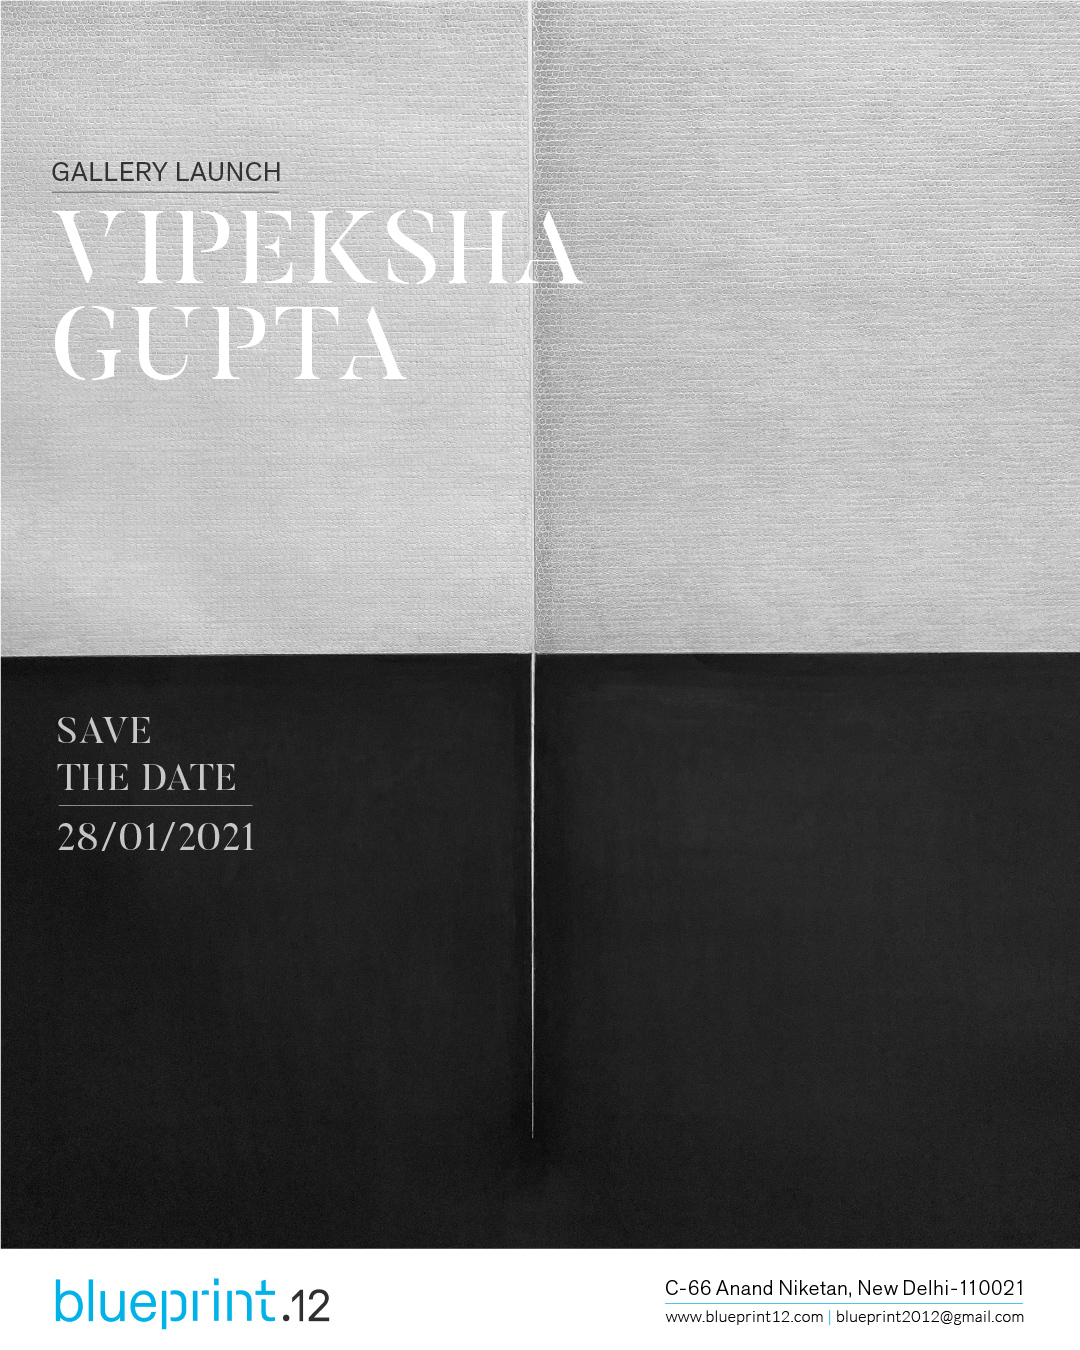 Solo Exhibition of graphite drawings by Vipeksha Gupta